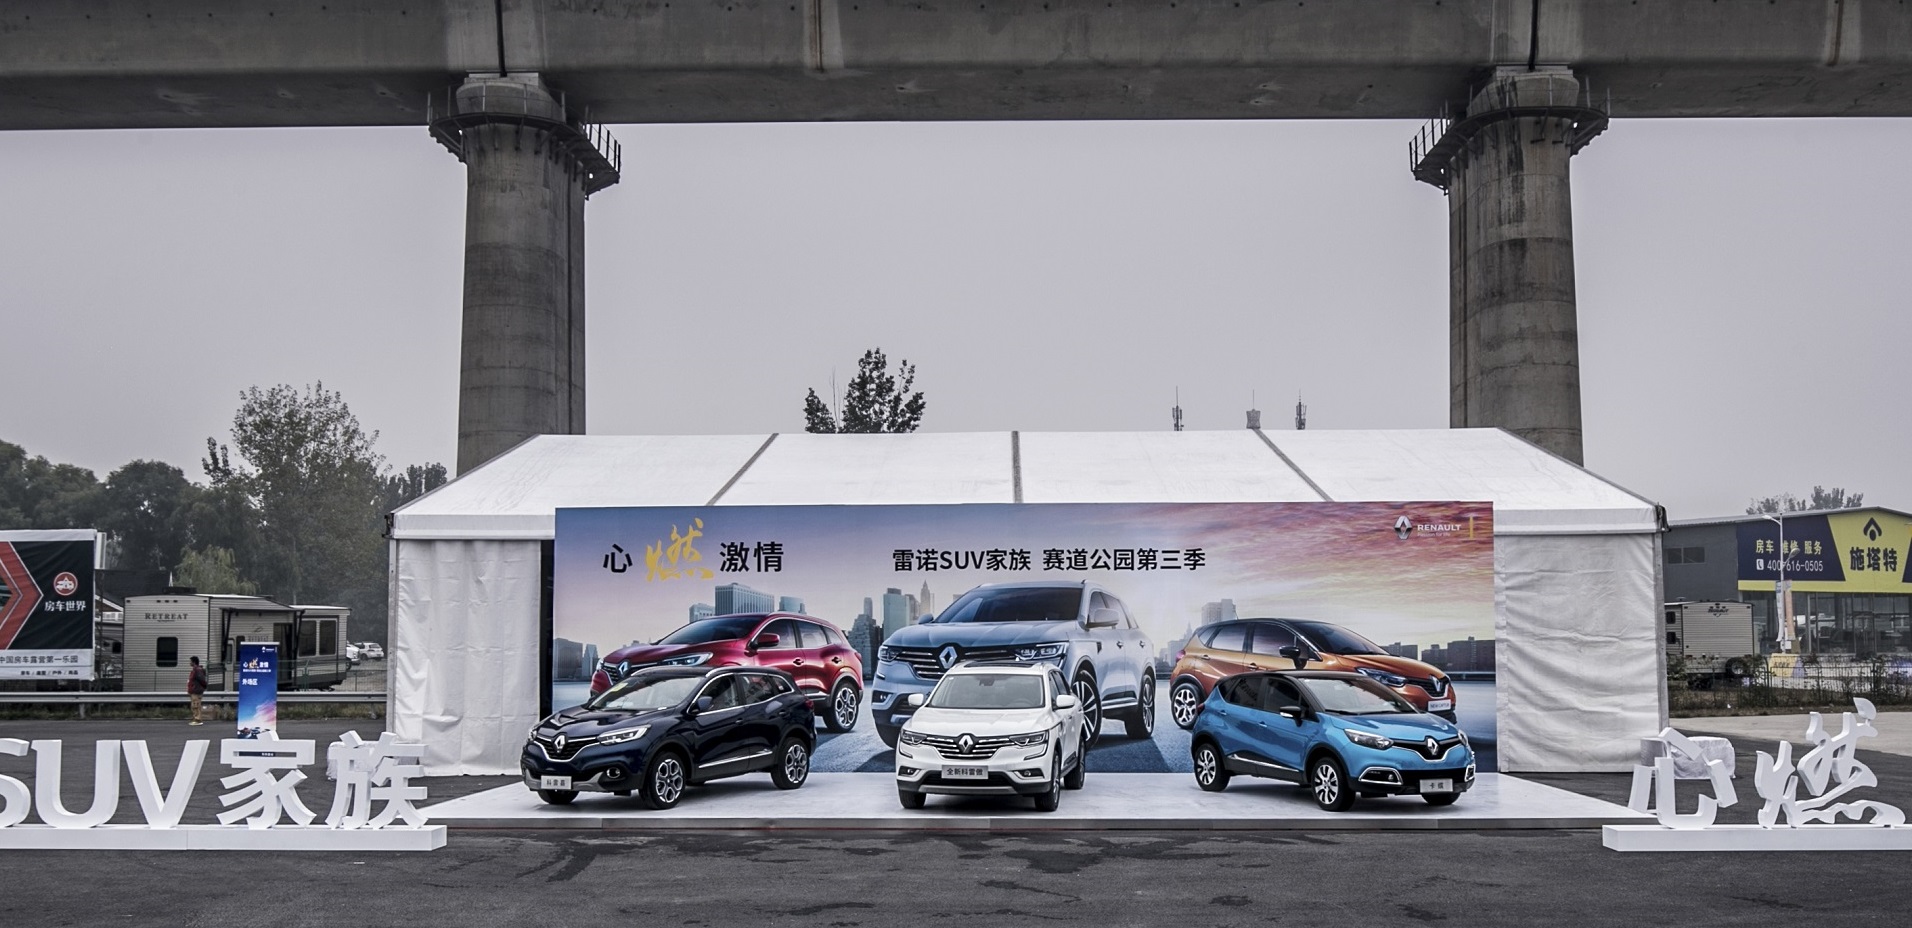 1-雷诺&东风雷诺SUV家族激情登陆赛道公园北京站.jpg